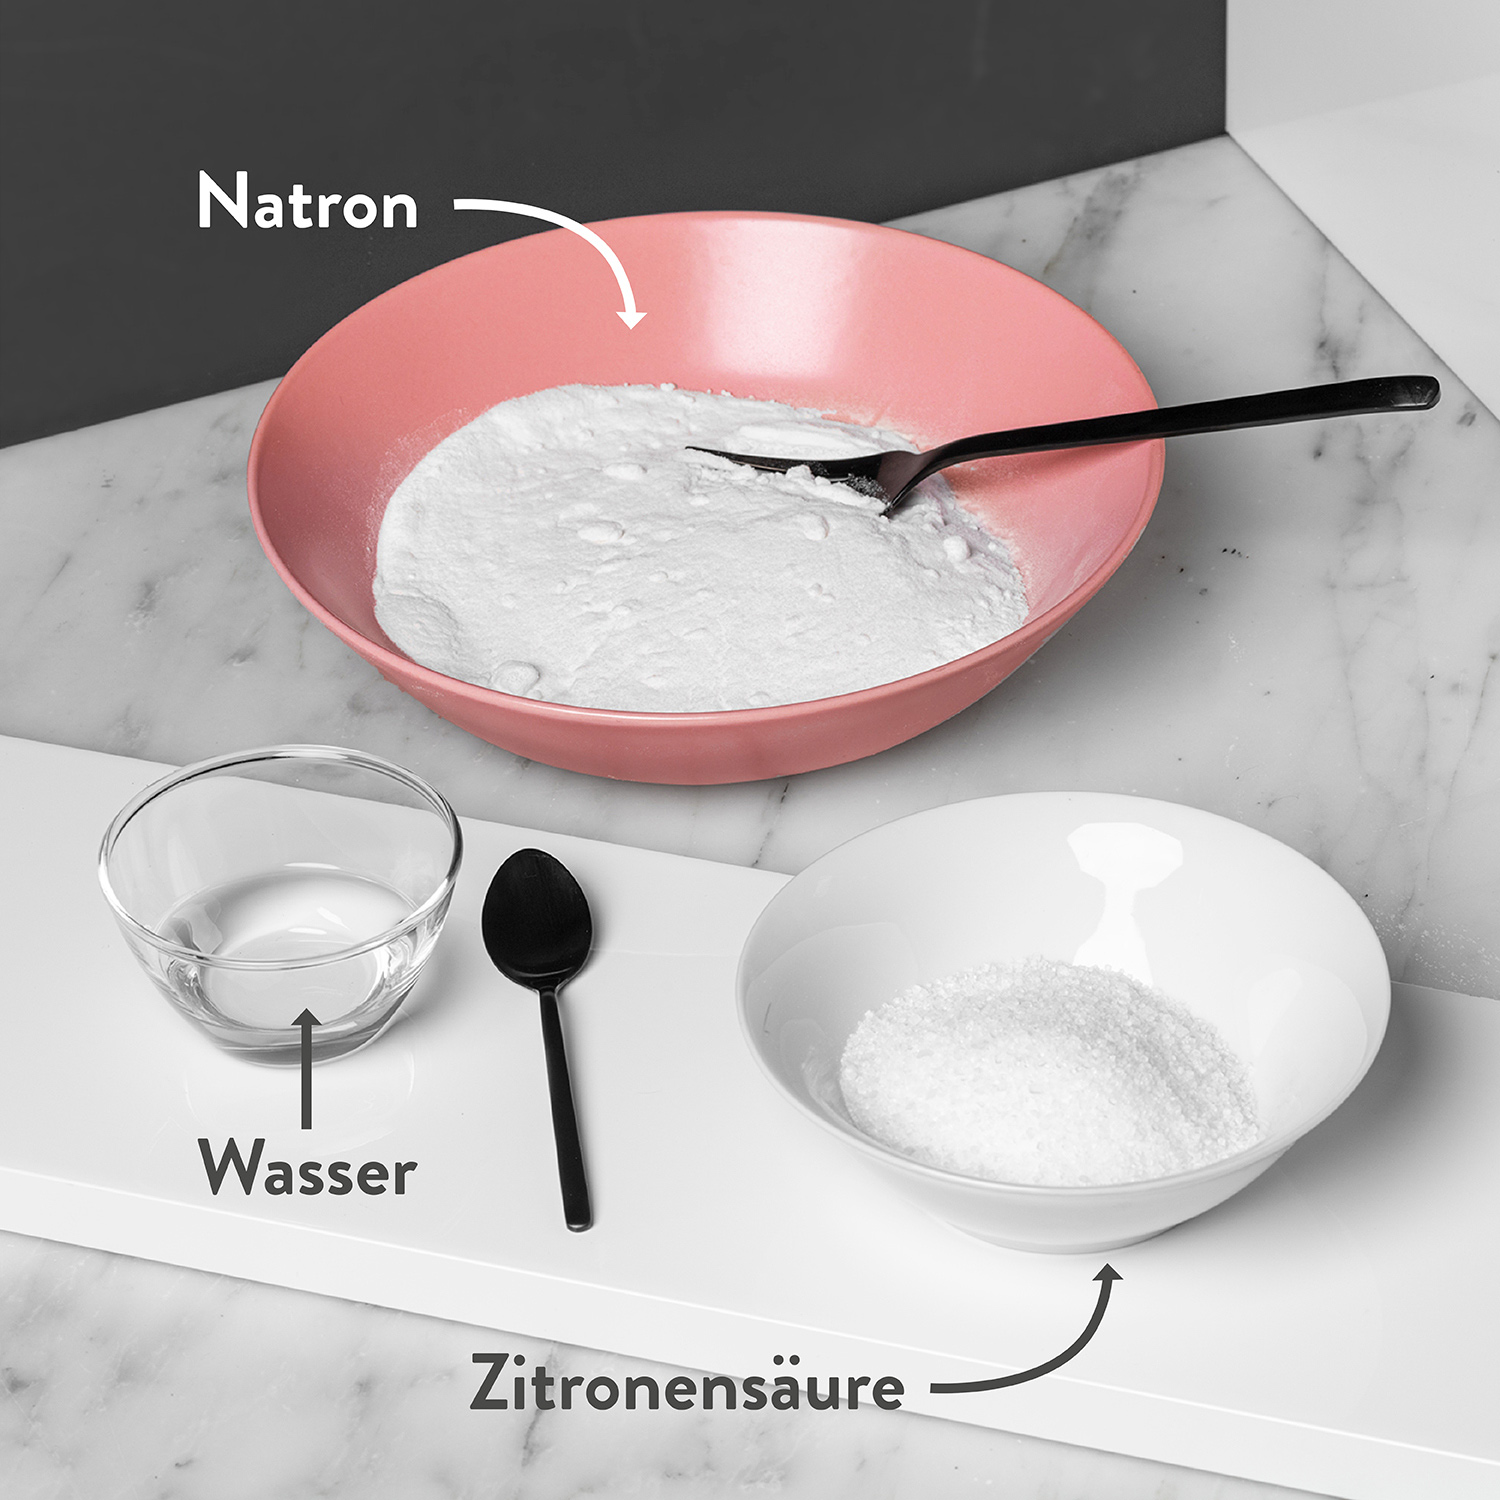 Natron in roter Schale, Zitronensäure in weisser Schale und Wasser in Glasschale auf Tisch